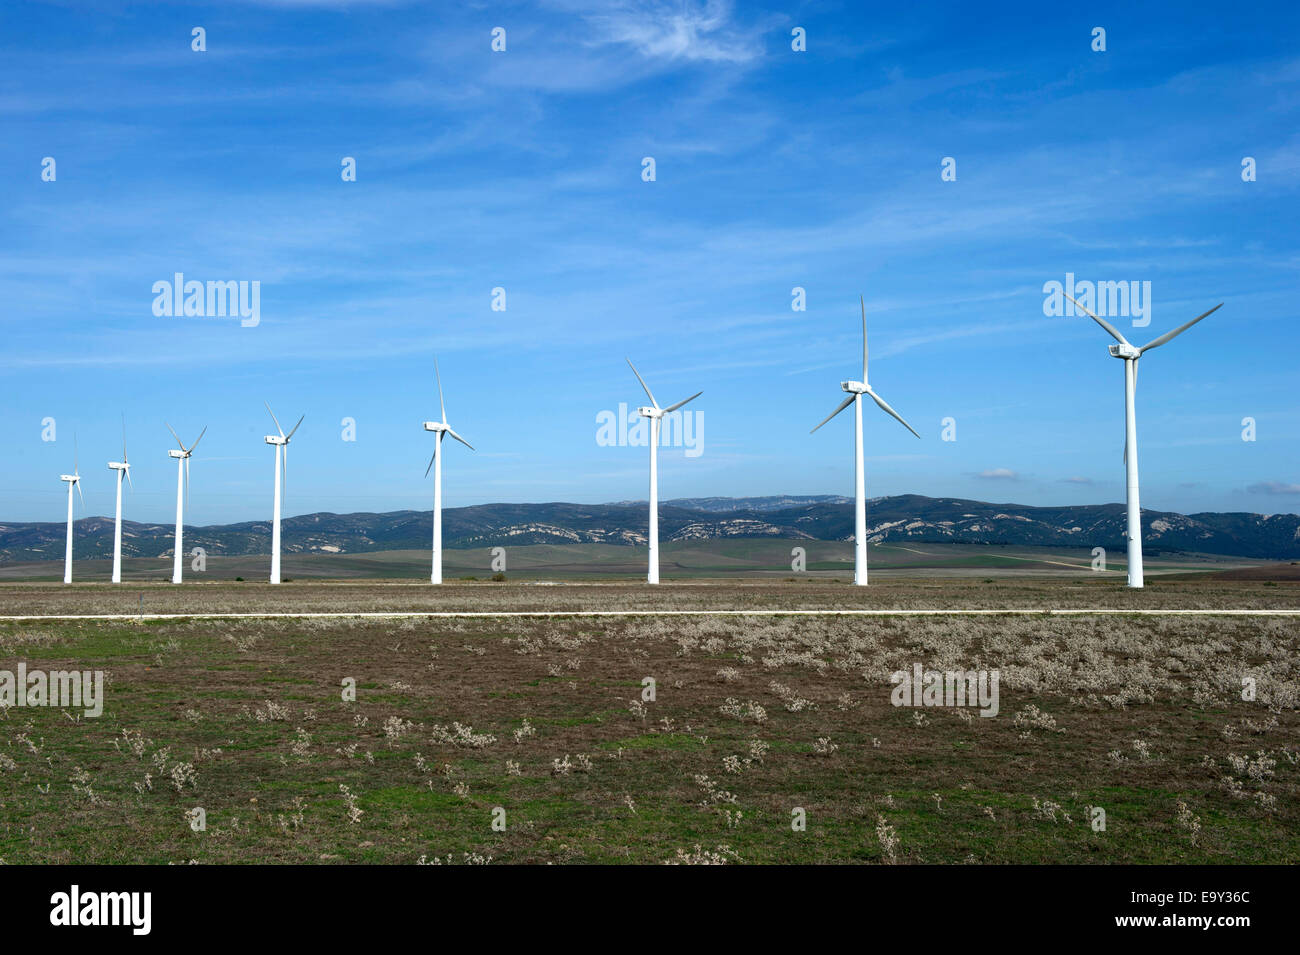 Hélices éoliennes l'énergie éolienne Banque D'Images